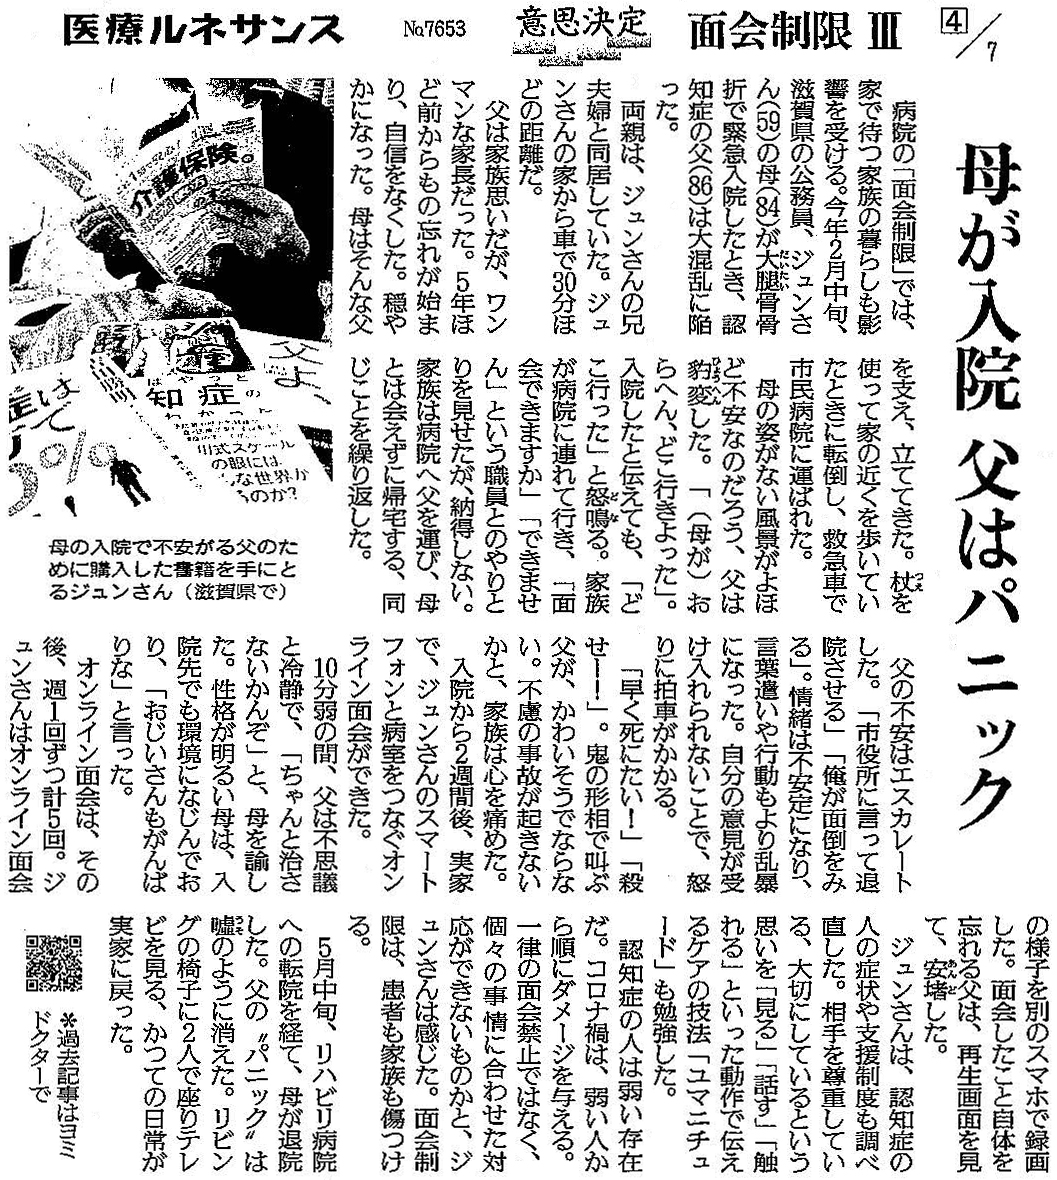 読売新聞 2021年11月23日掲載記事